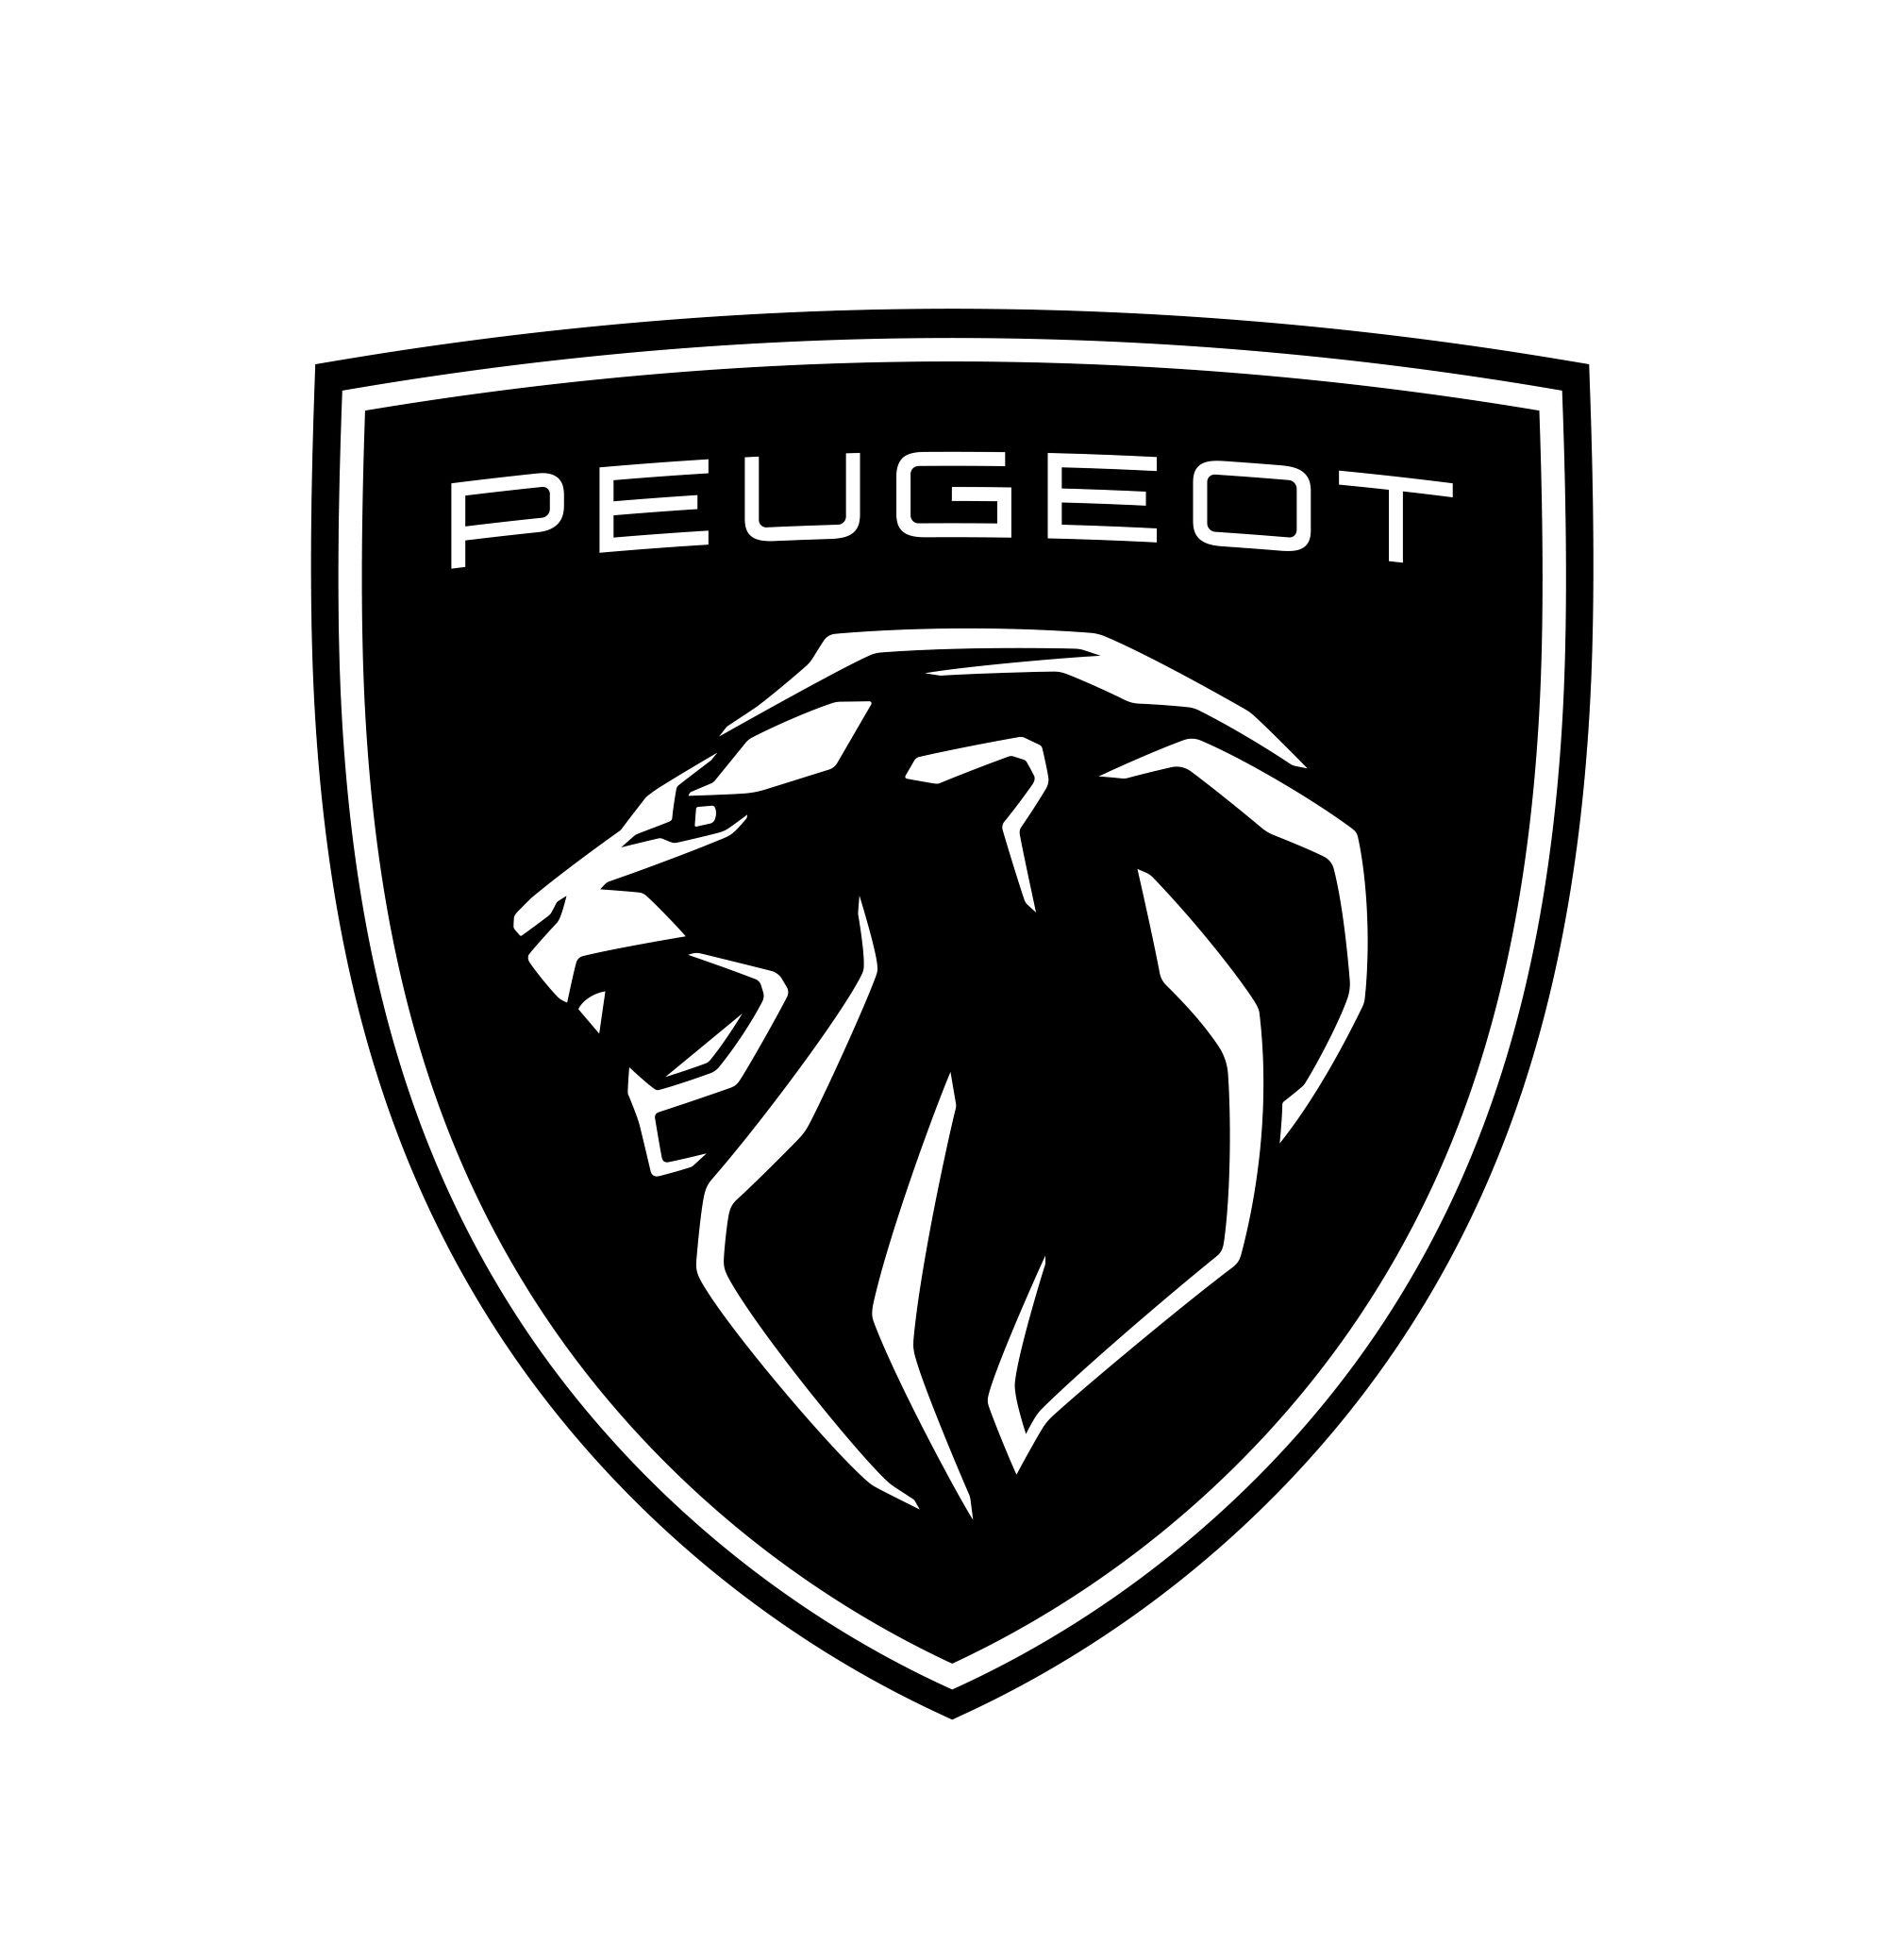 Peugeot logo klein